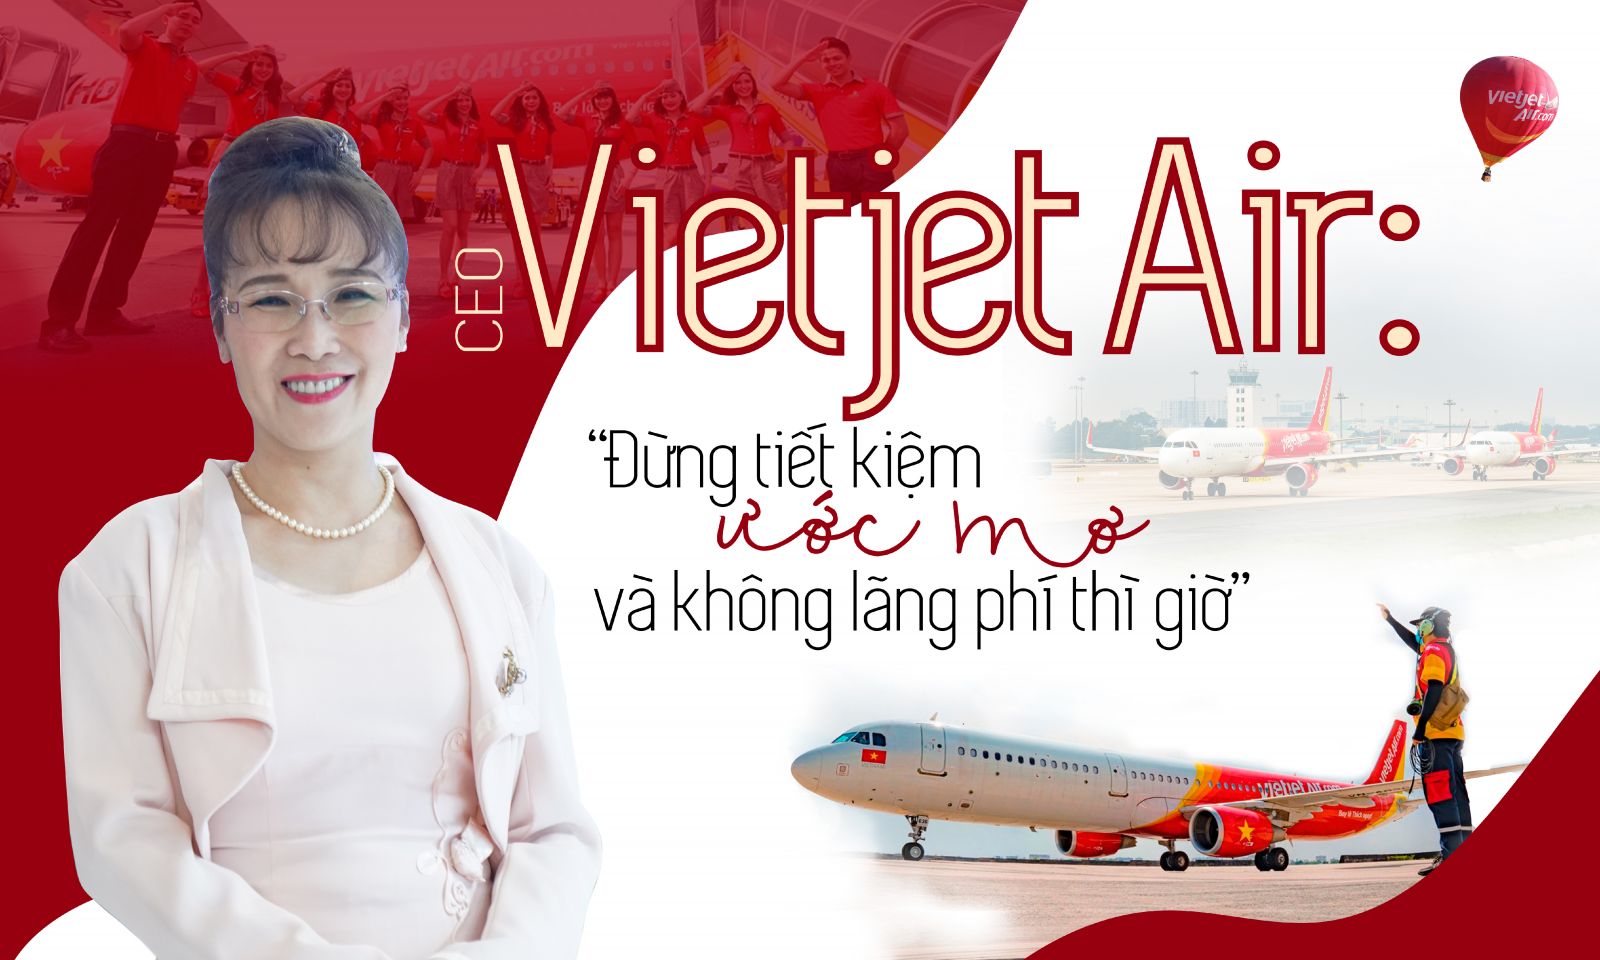 CEO Vietjet Air: “Đừng tiết kiệm ước mơ và không lãng phí thì giờ” 